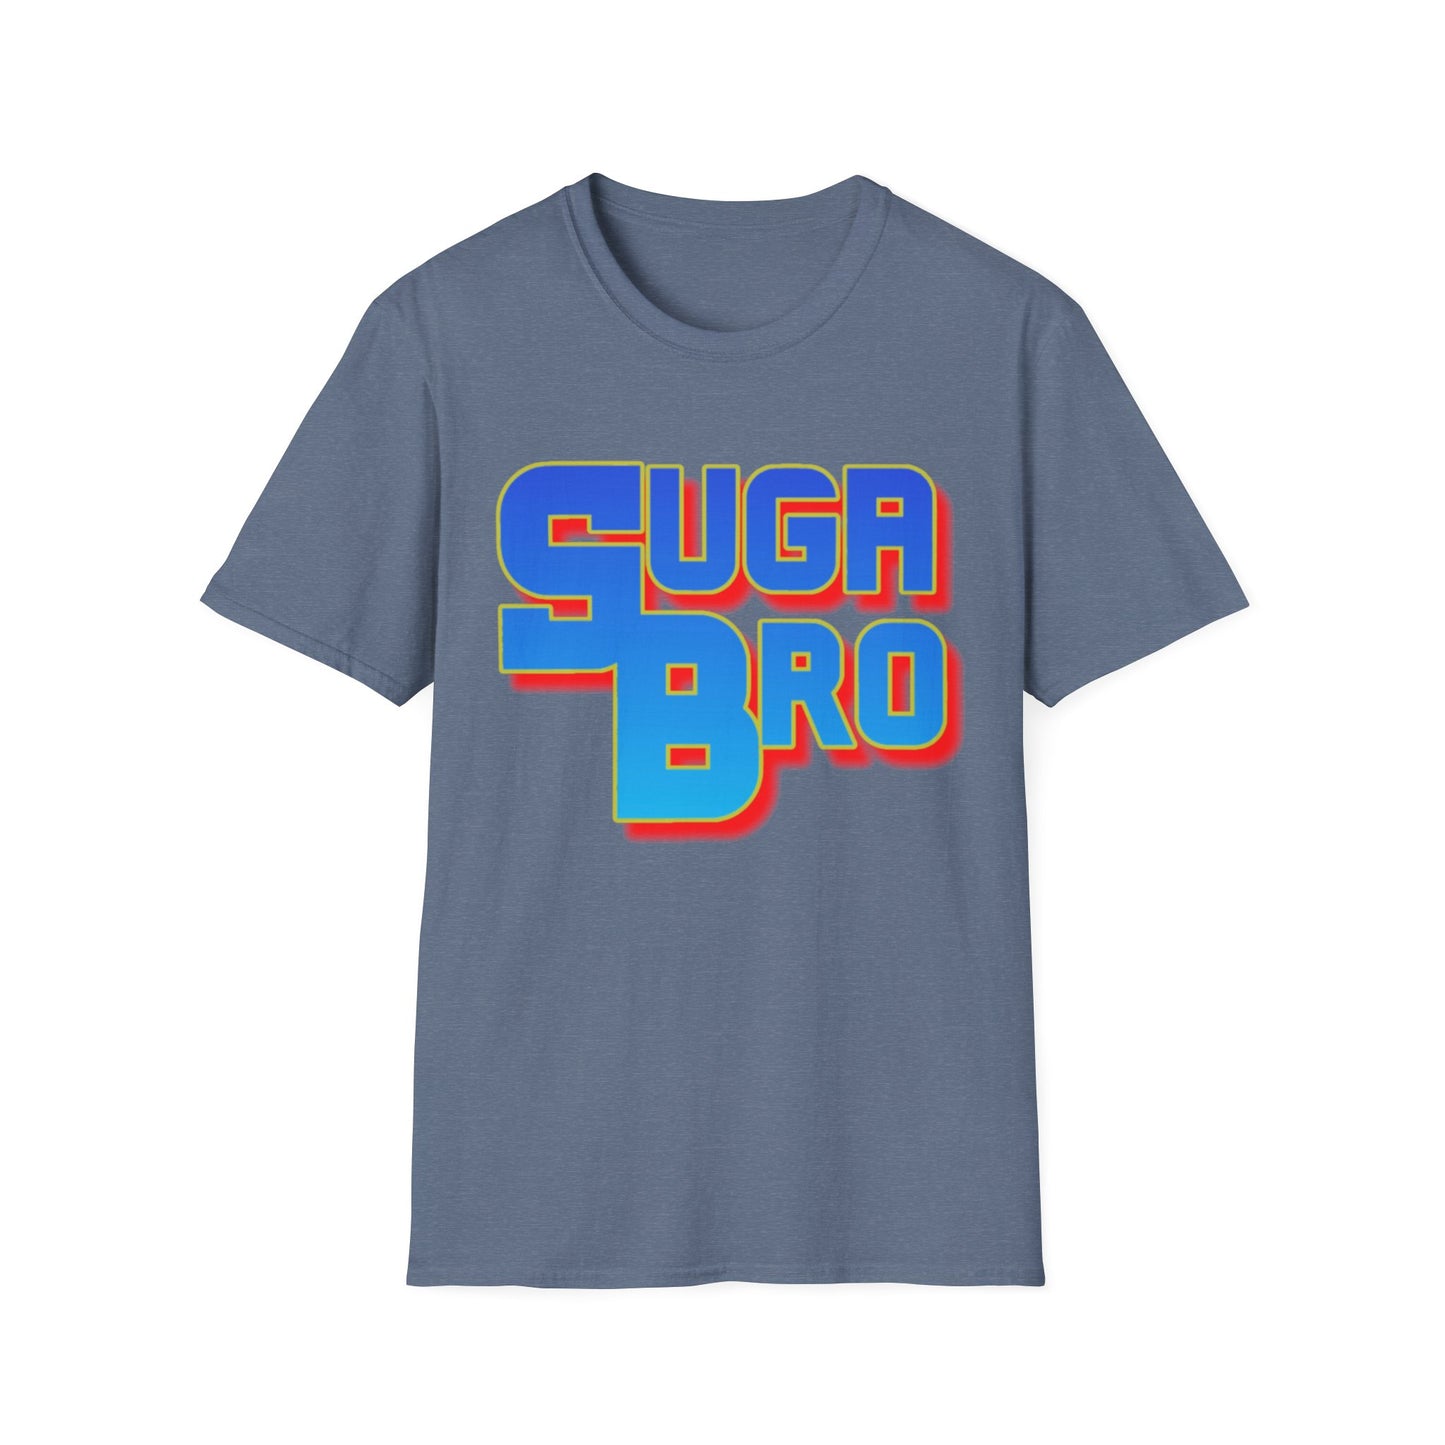 Suga Bro - Unisex Softstyle T-Shirt